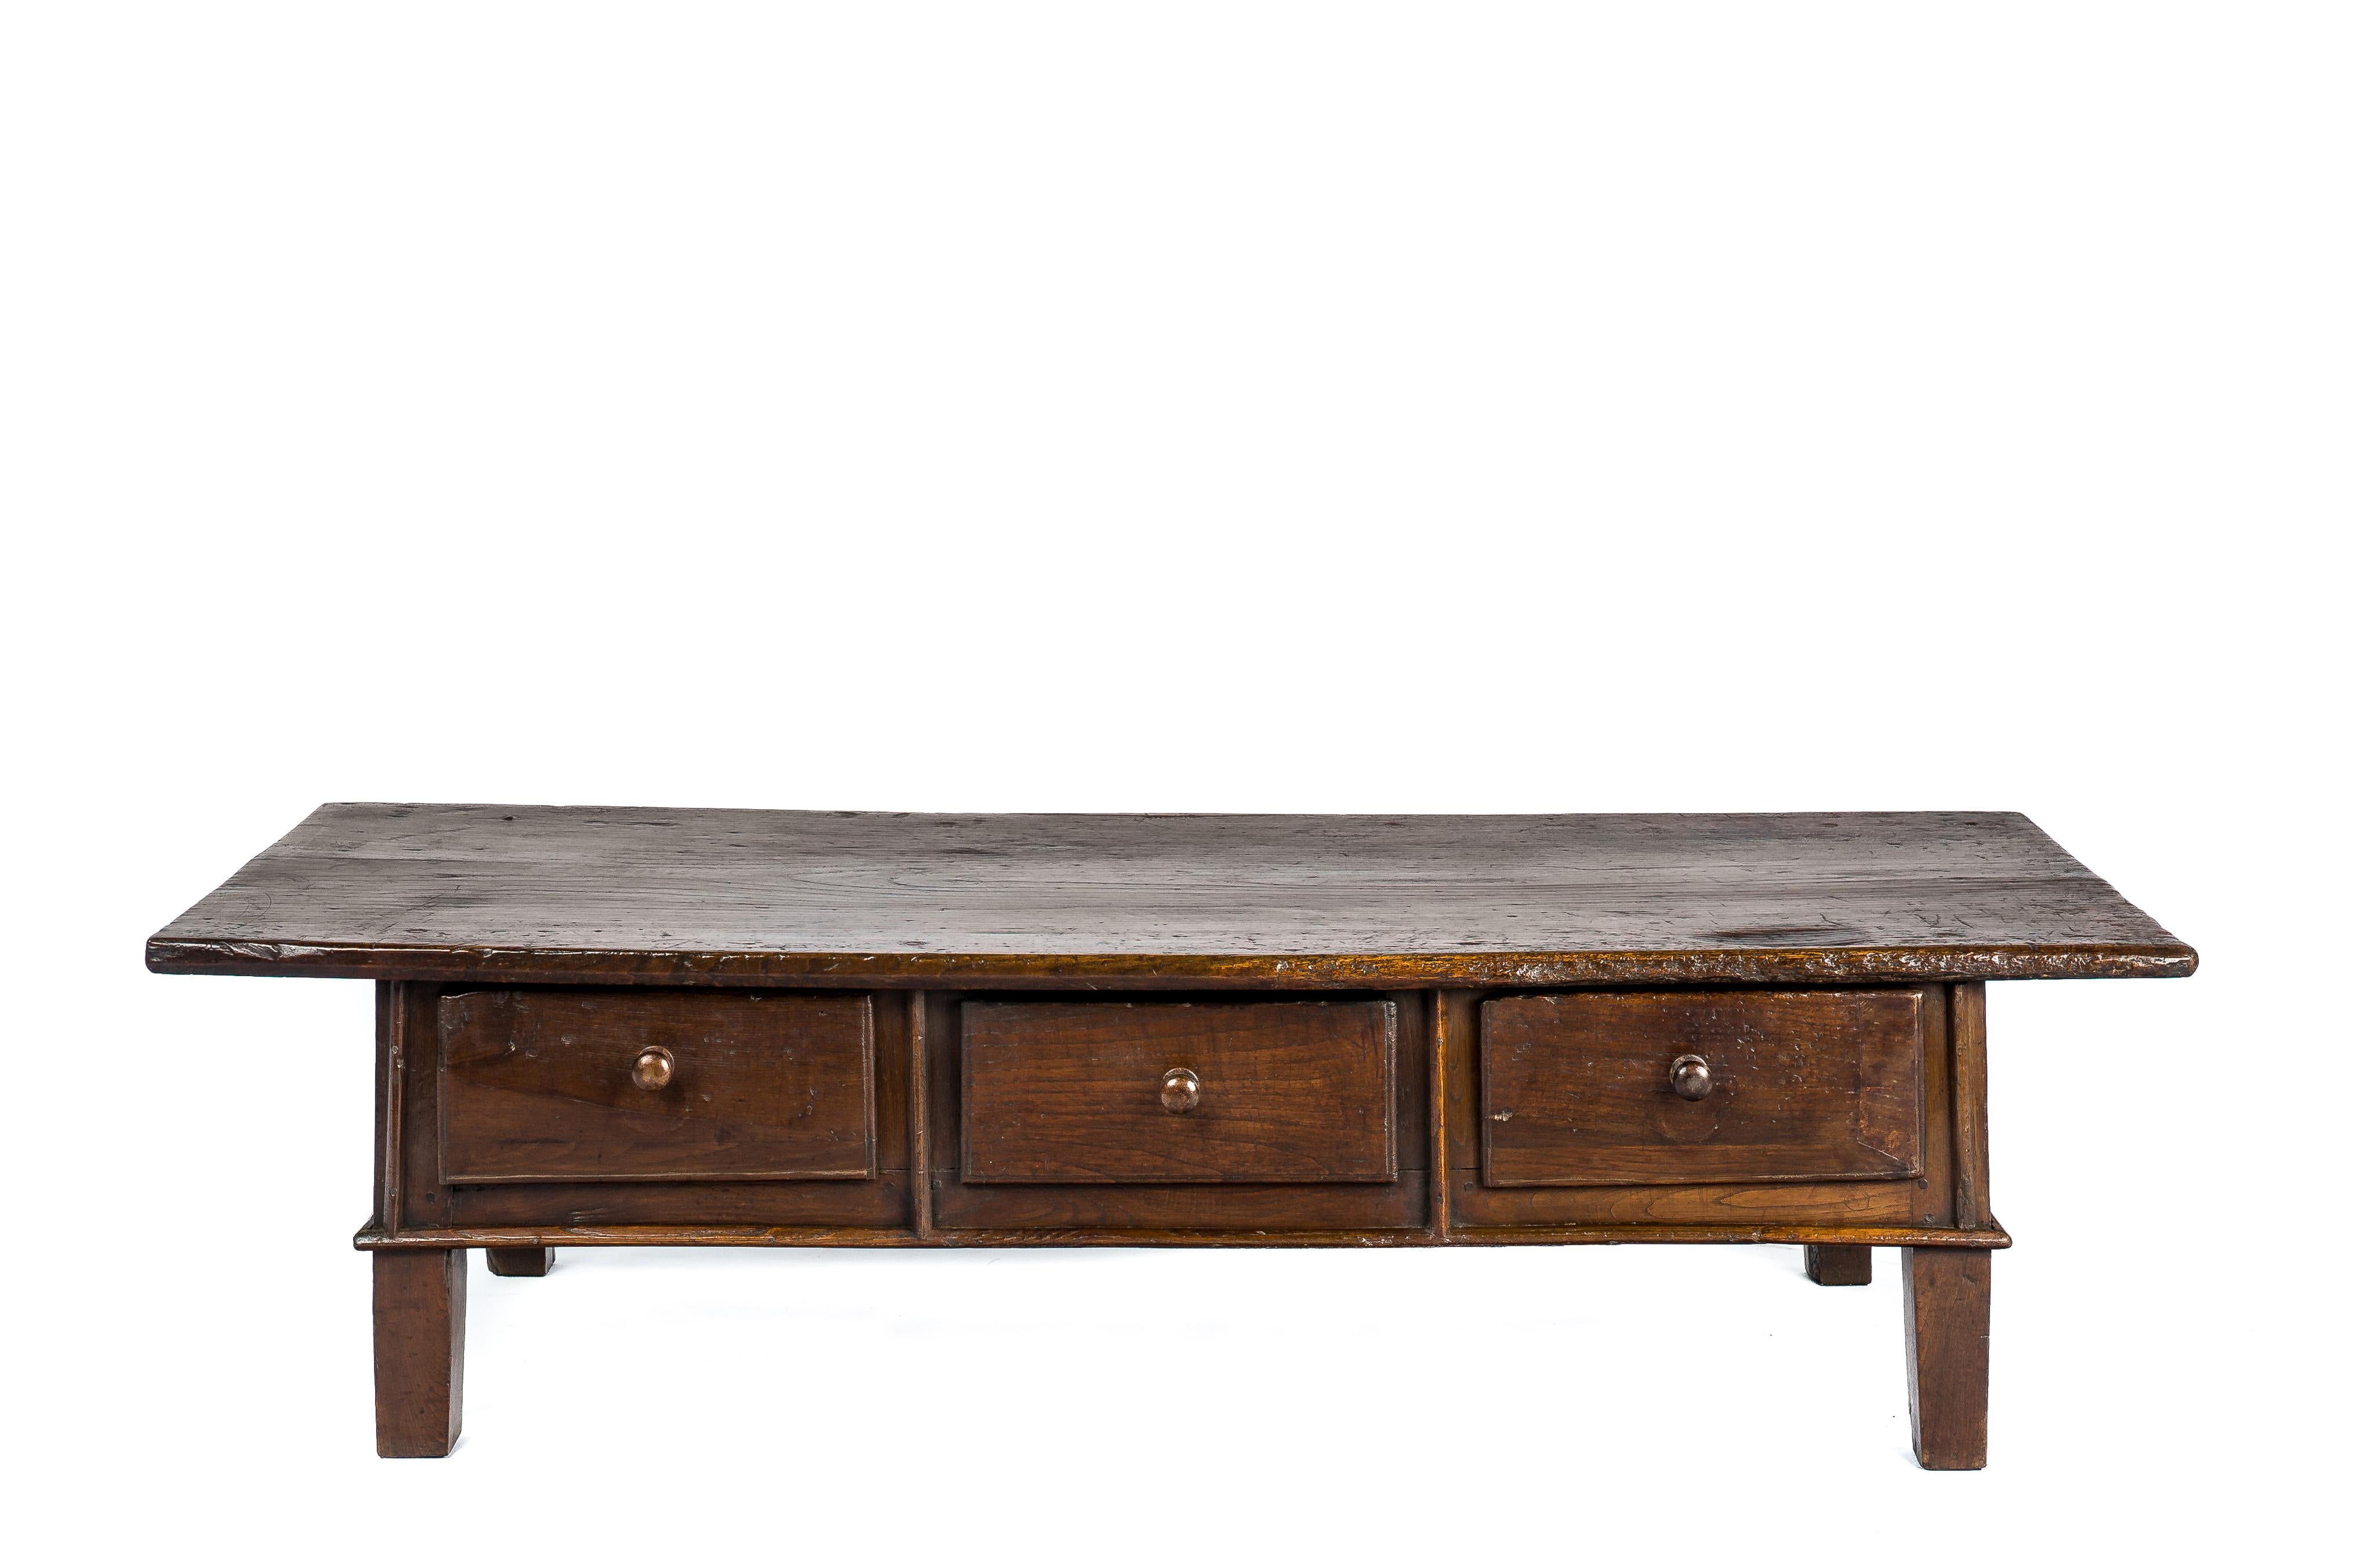 Dieser schöne rustikale Couchtisch oder niedrige Tisch in warmen Brauntönen stammt aus Spanien und ist um 1775 entstanden. Der Tisch hat eine fantastische Platte, die aus einem einzigen Brett aus massivem Kastanienholz mit einer Dicke von 1,4 Zoll